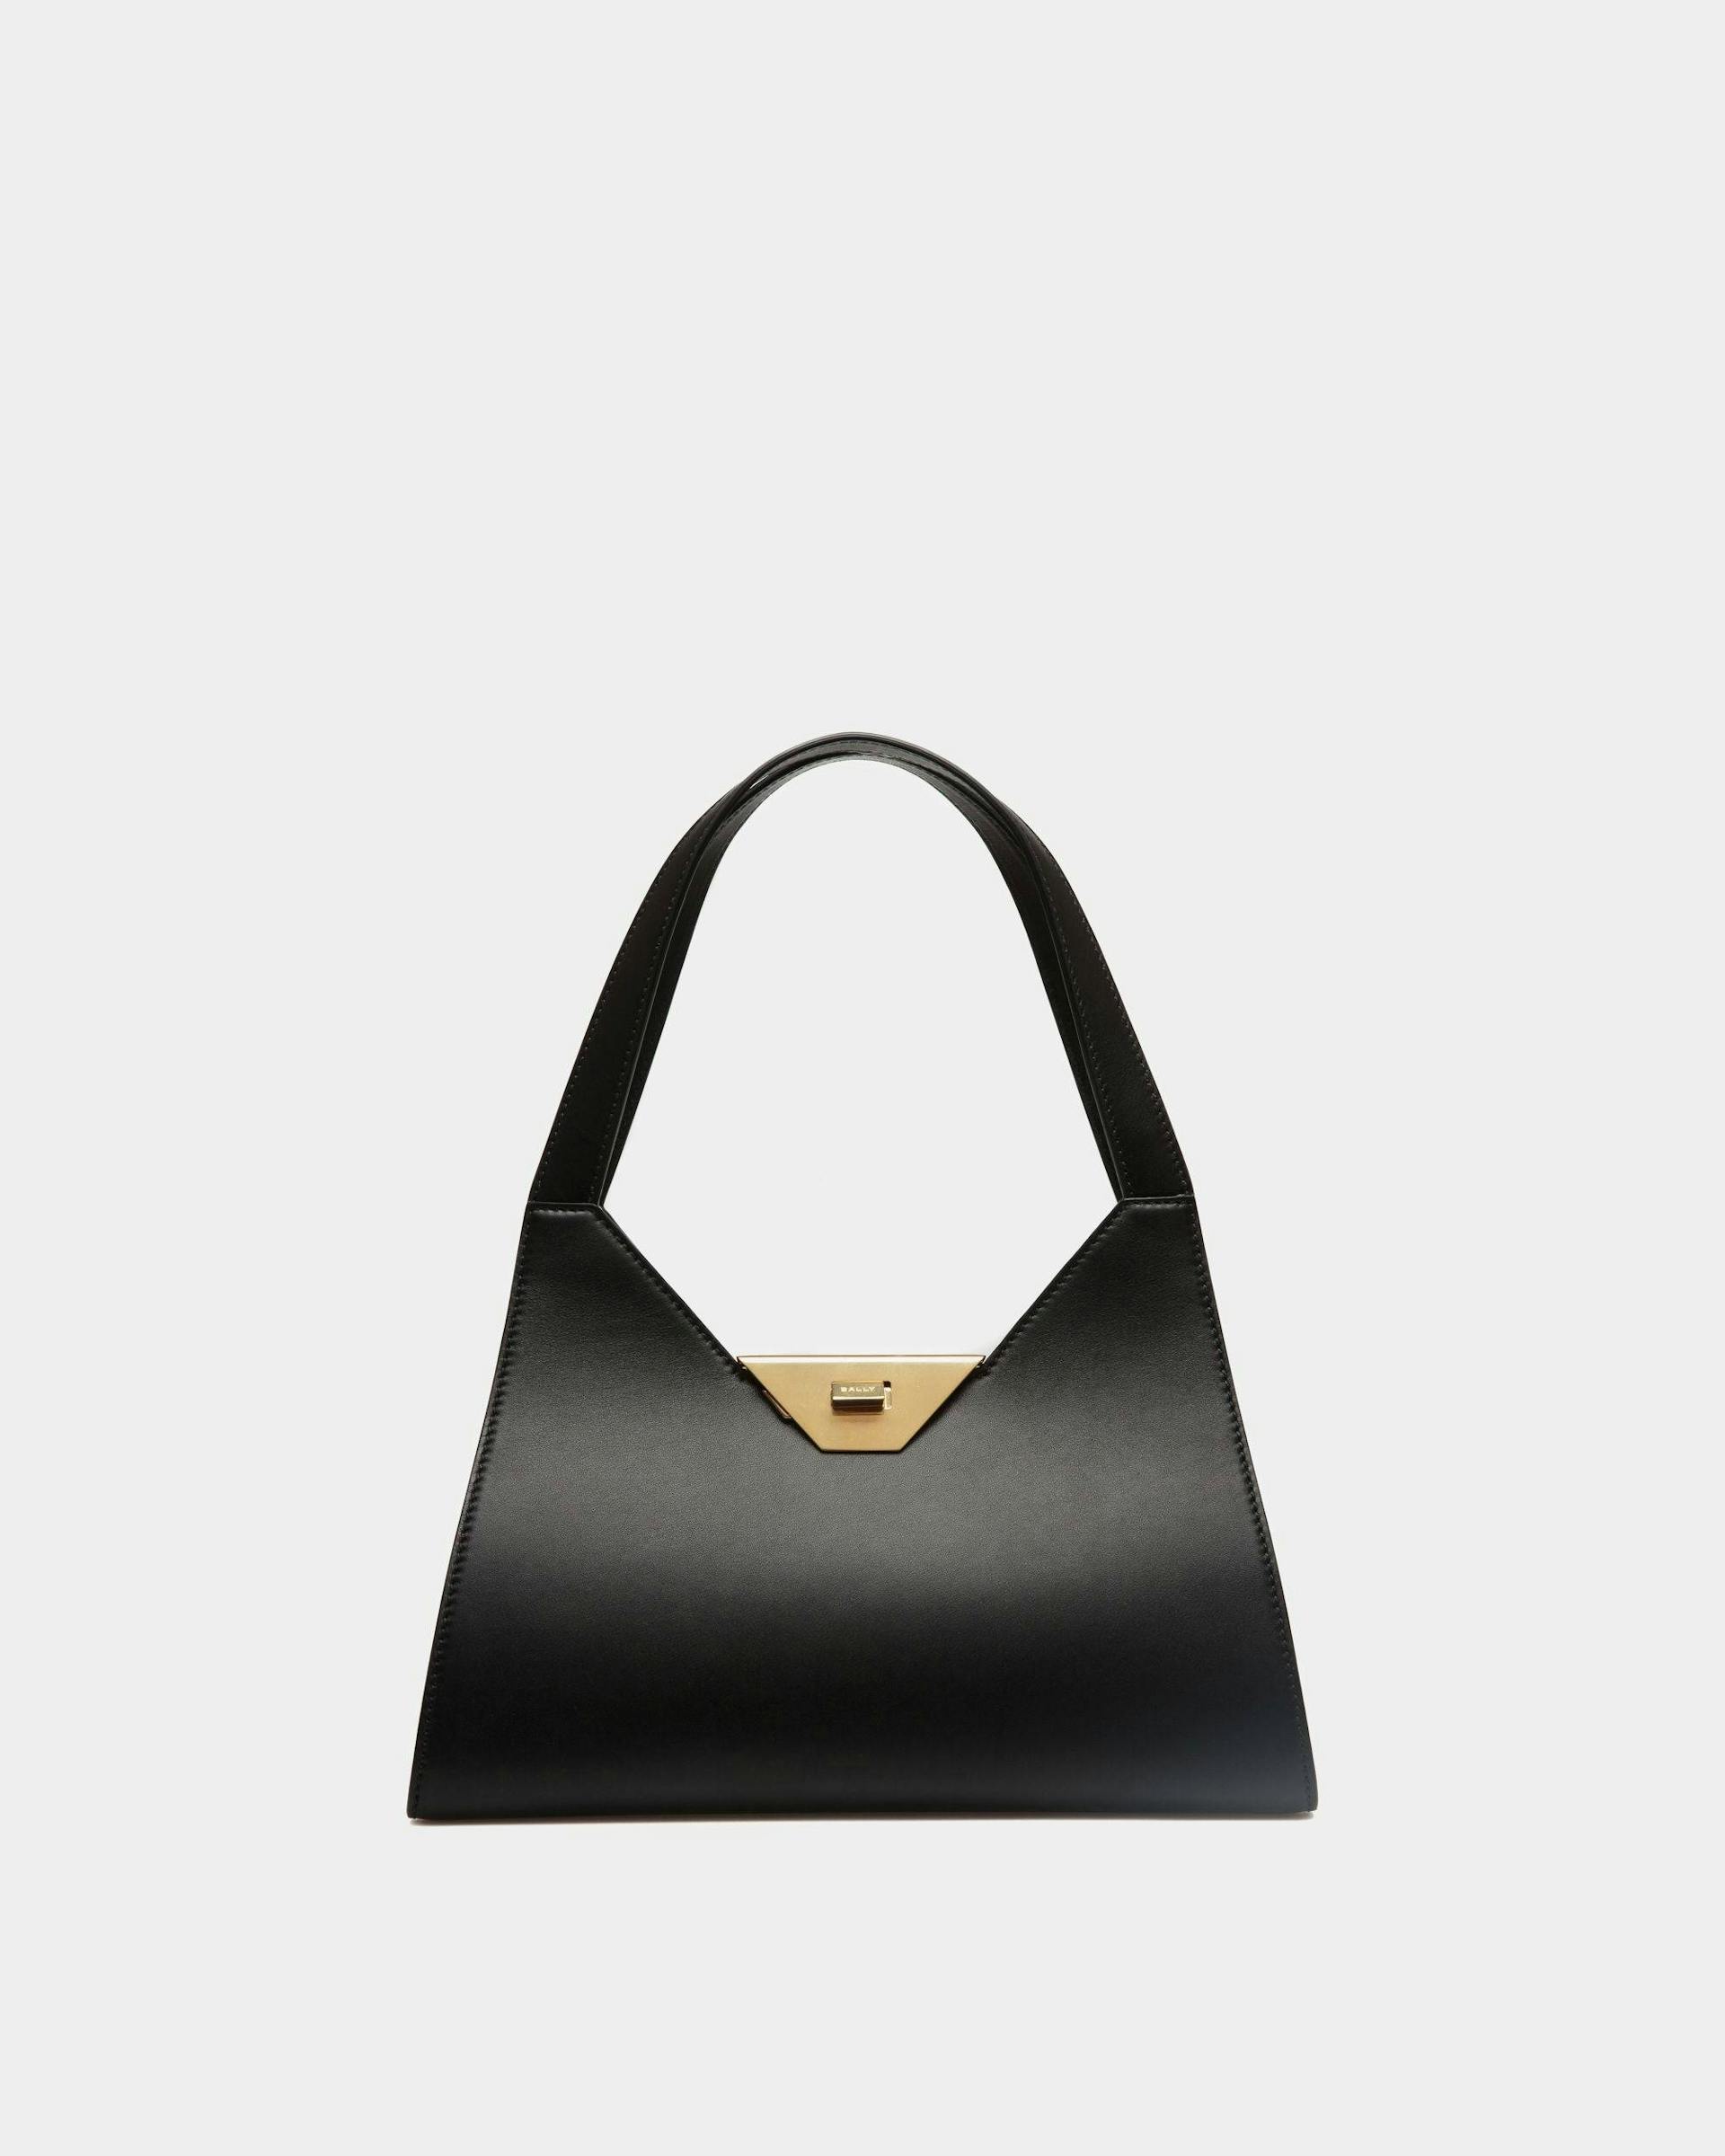 Women's Tilt Shoulder Bag in Black Leather | Bally | Still Life Front